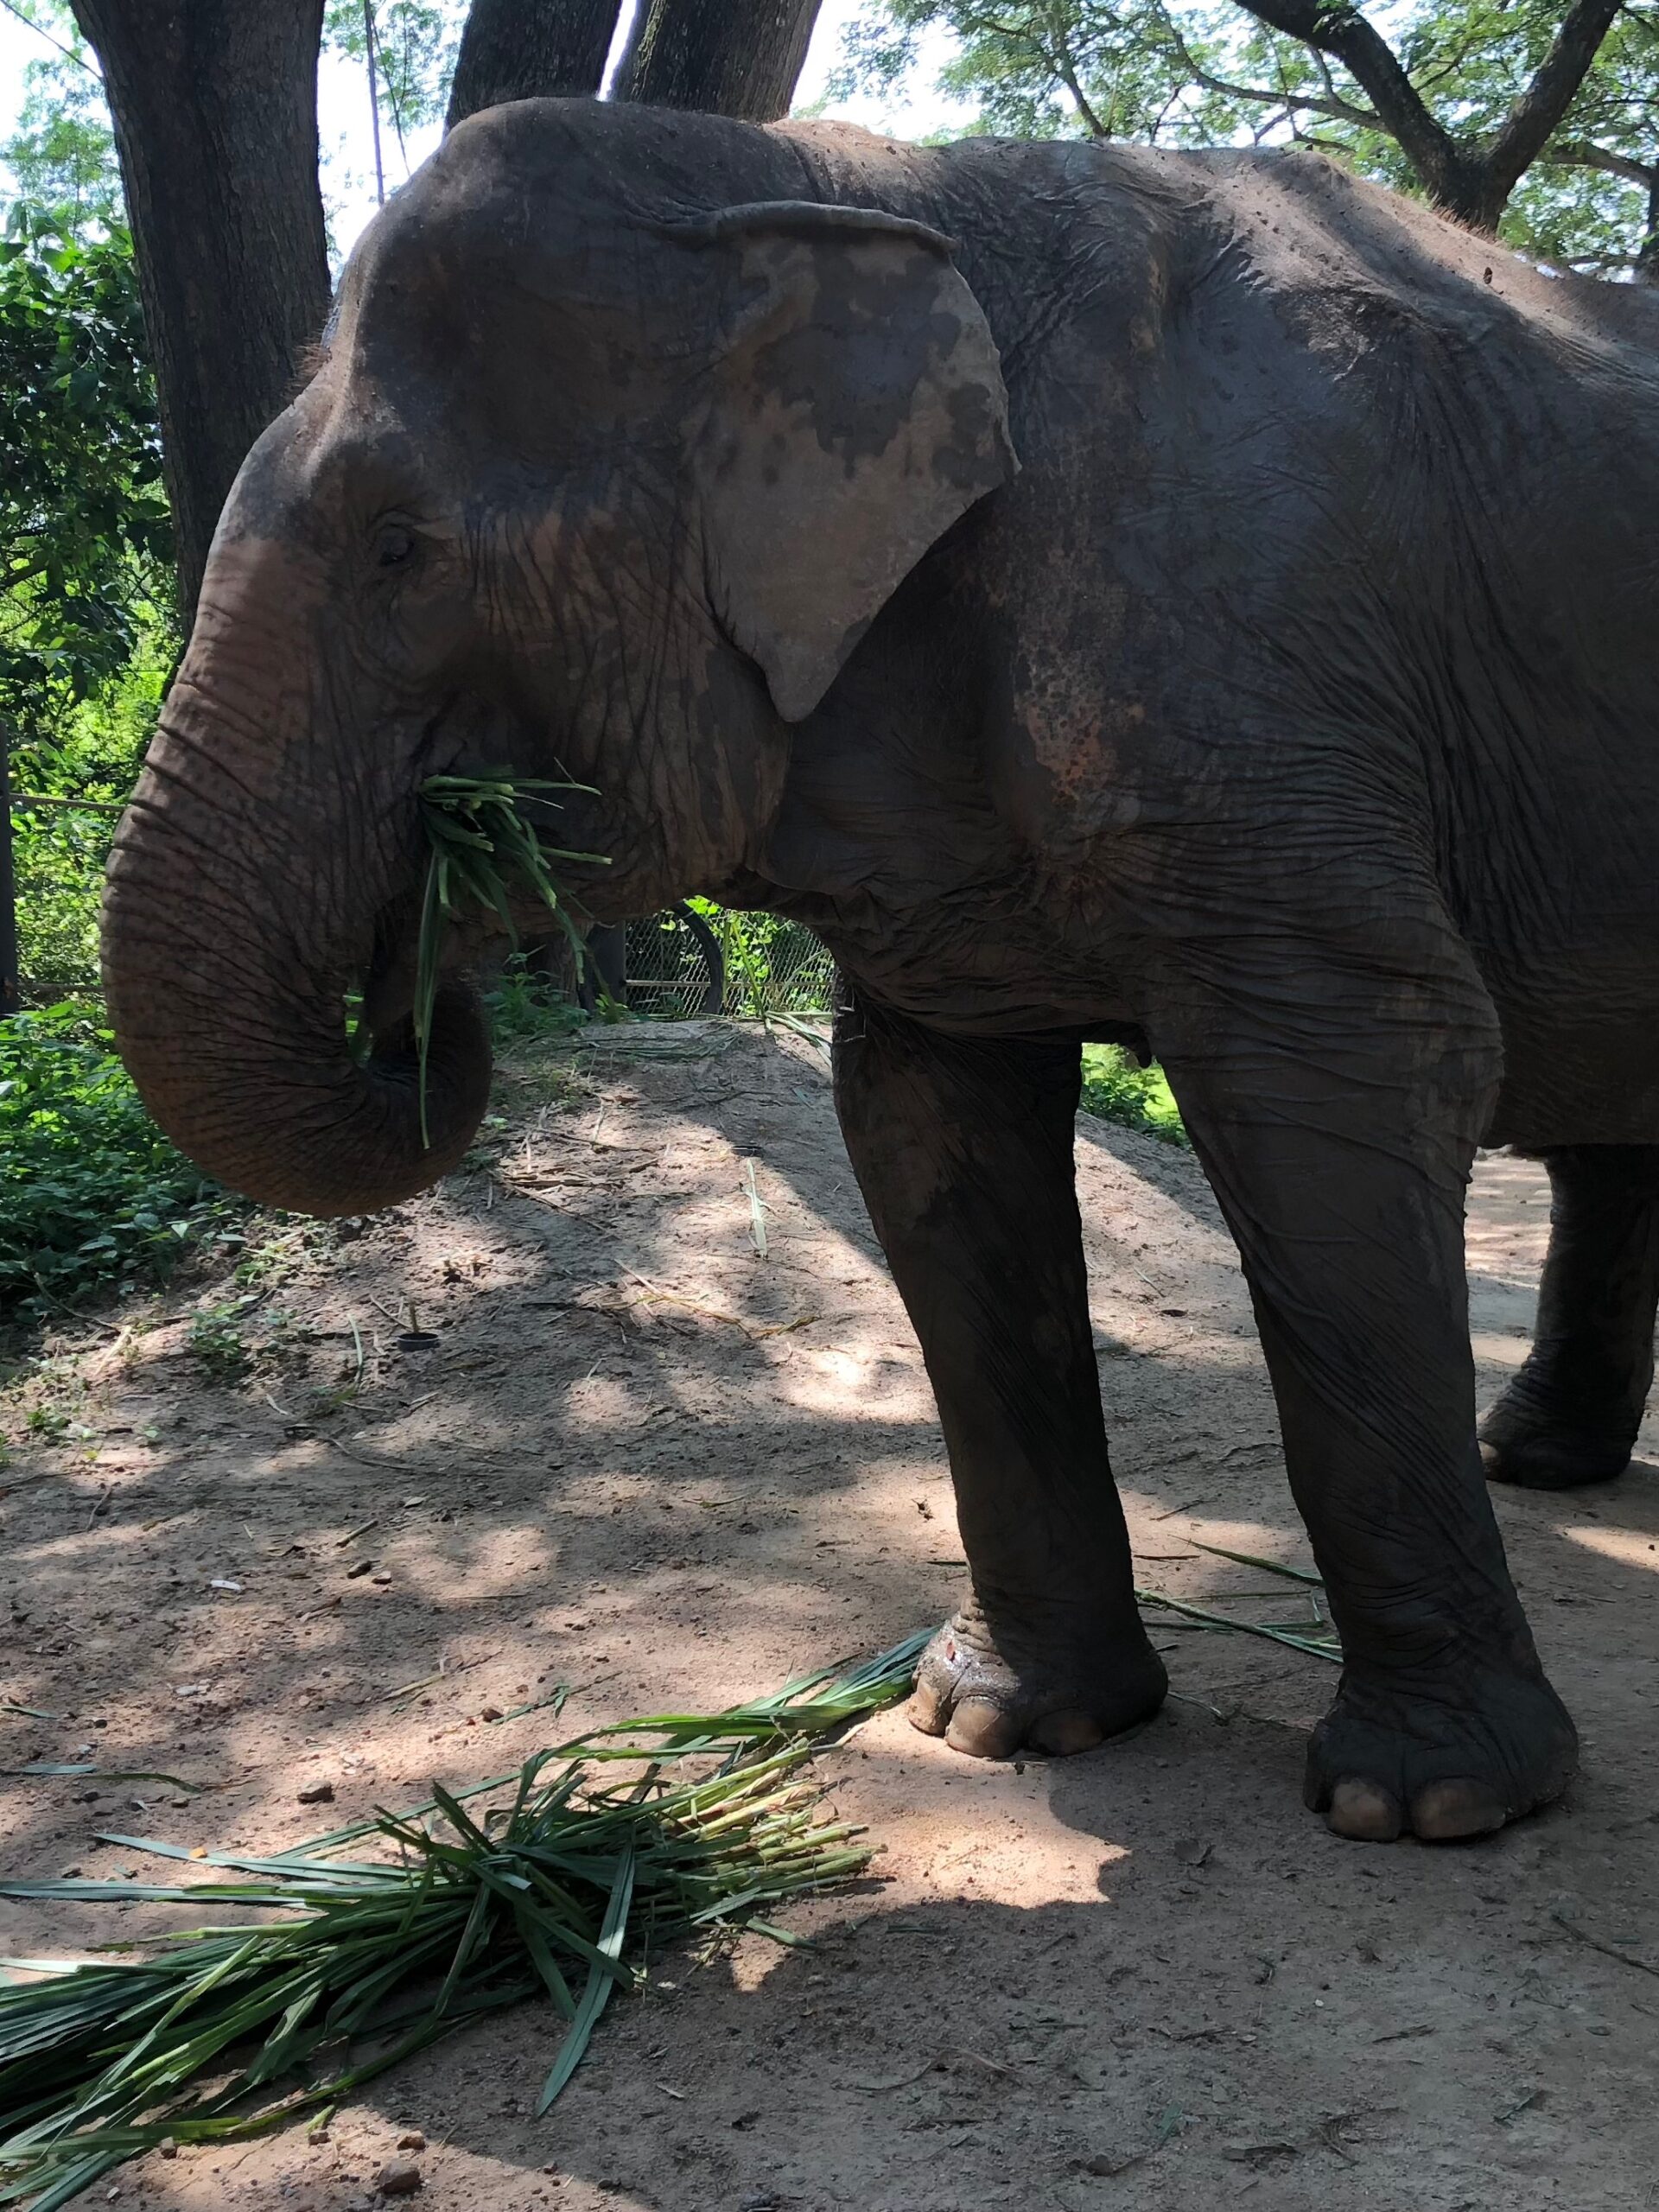 Bild: Ein fressender Elefant in einem Elefantenreservat, Thailand